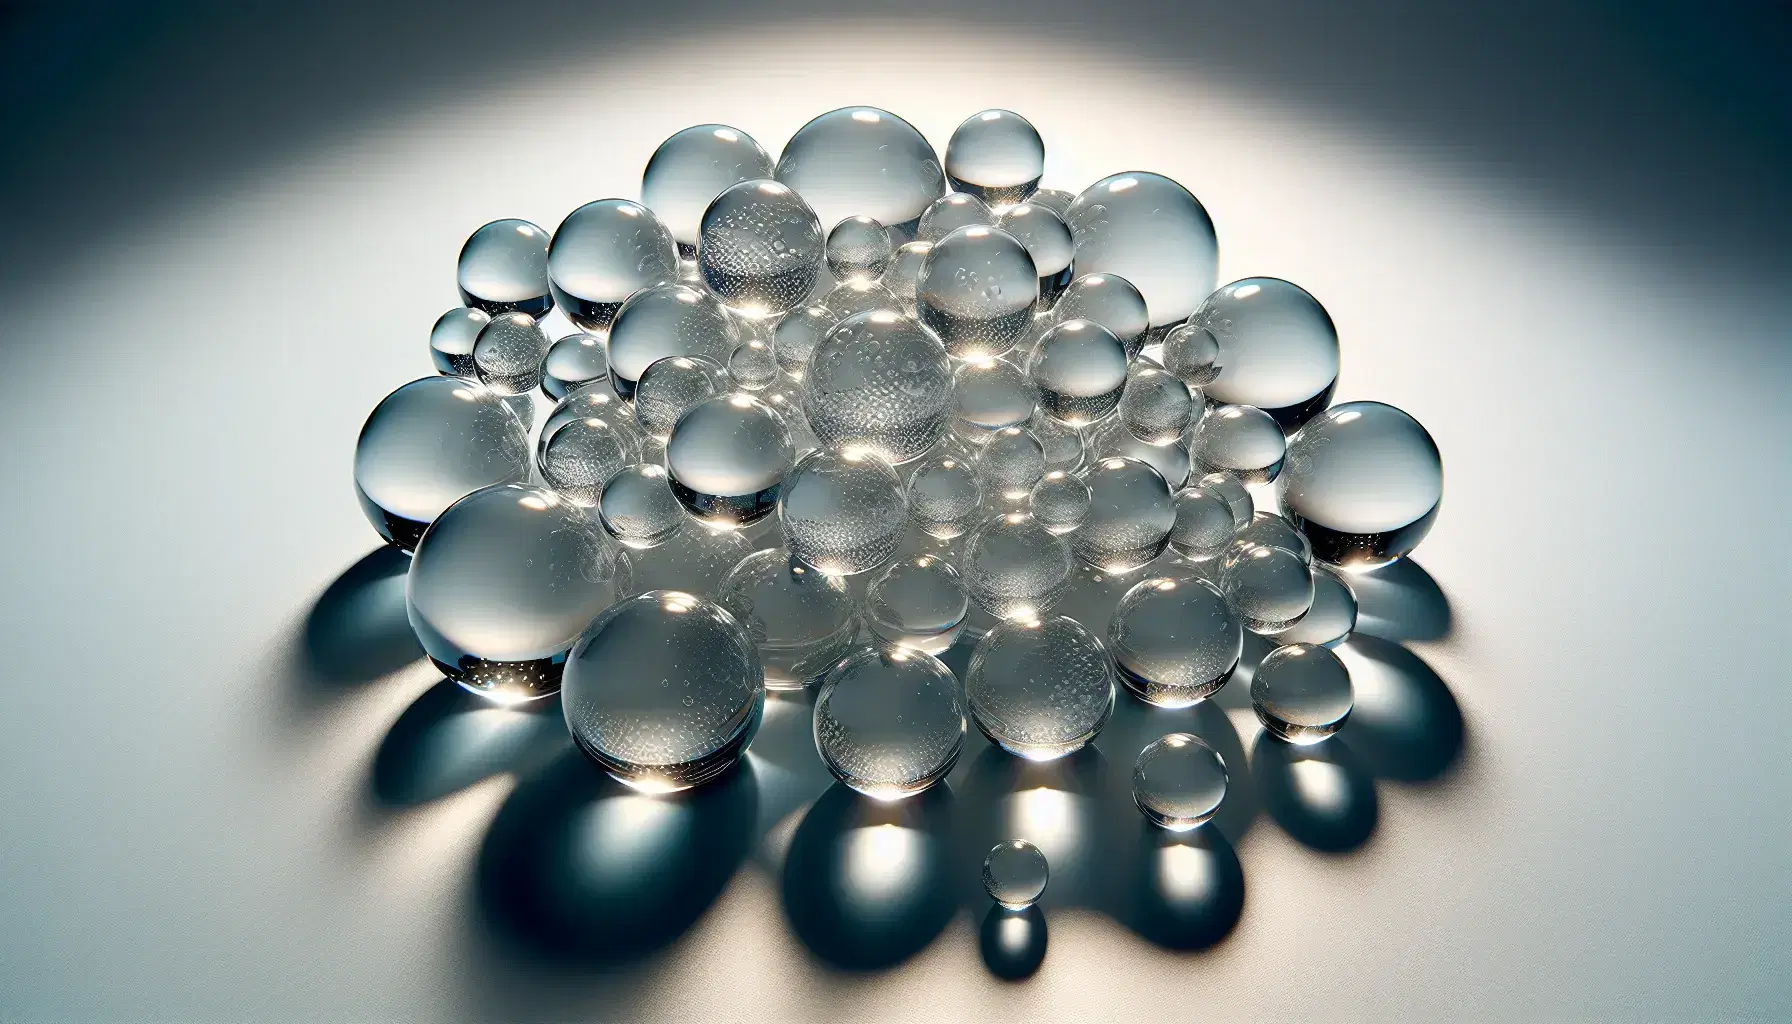 Esferas de vidrio transparentes de distintos tamaños sobre superficie gris, reflejando y refractando luz con sombras y destellos.